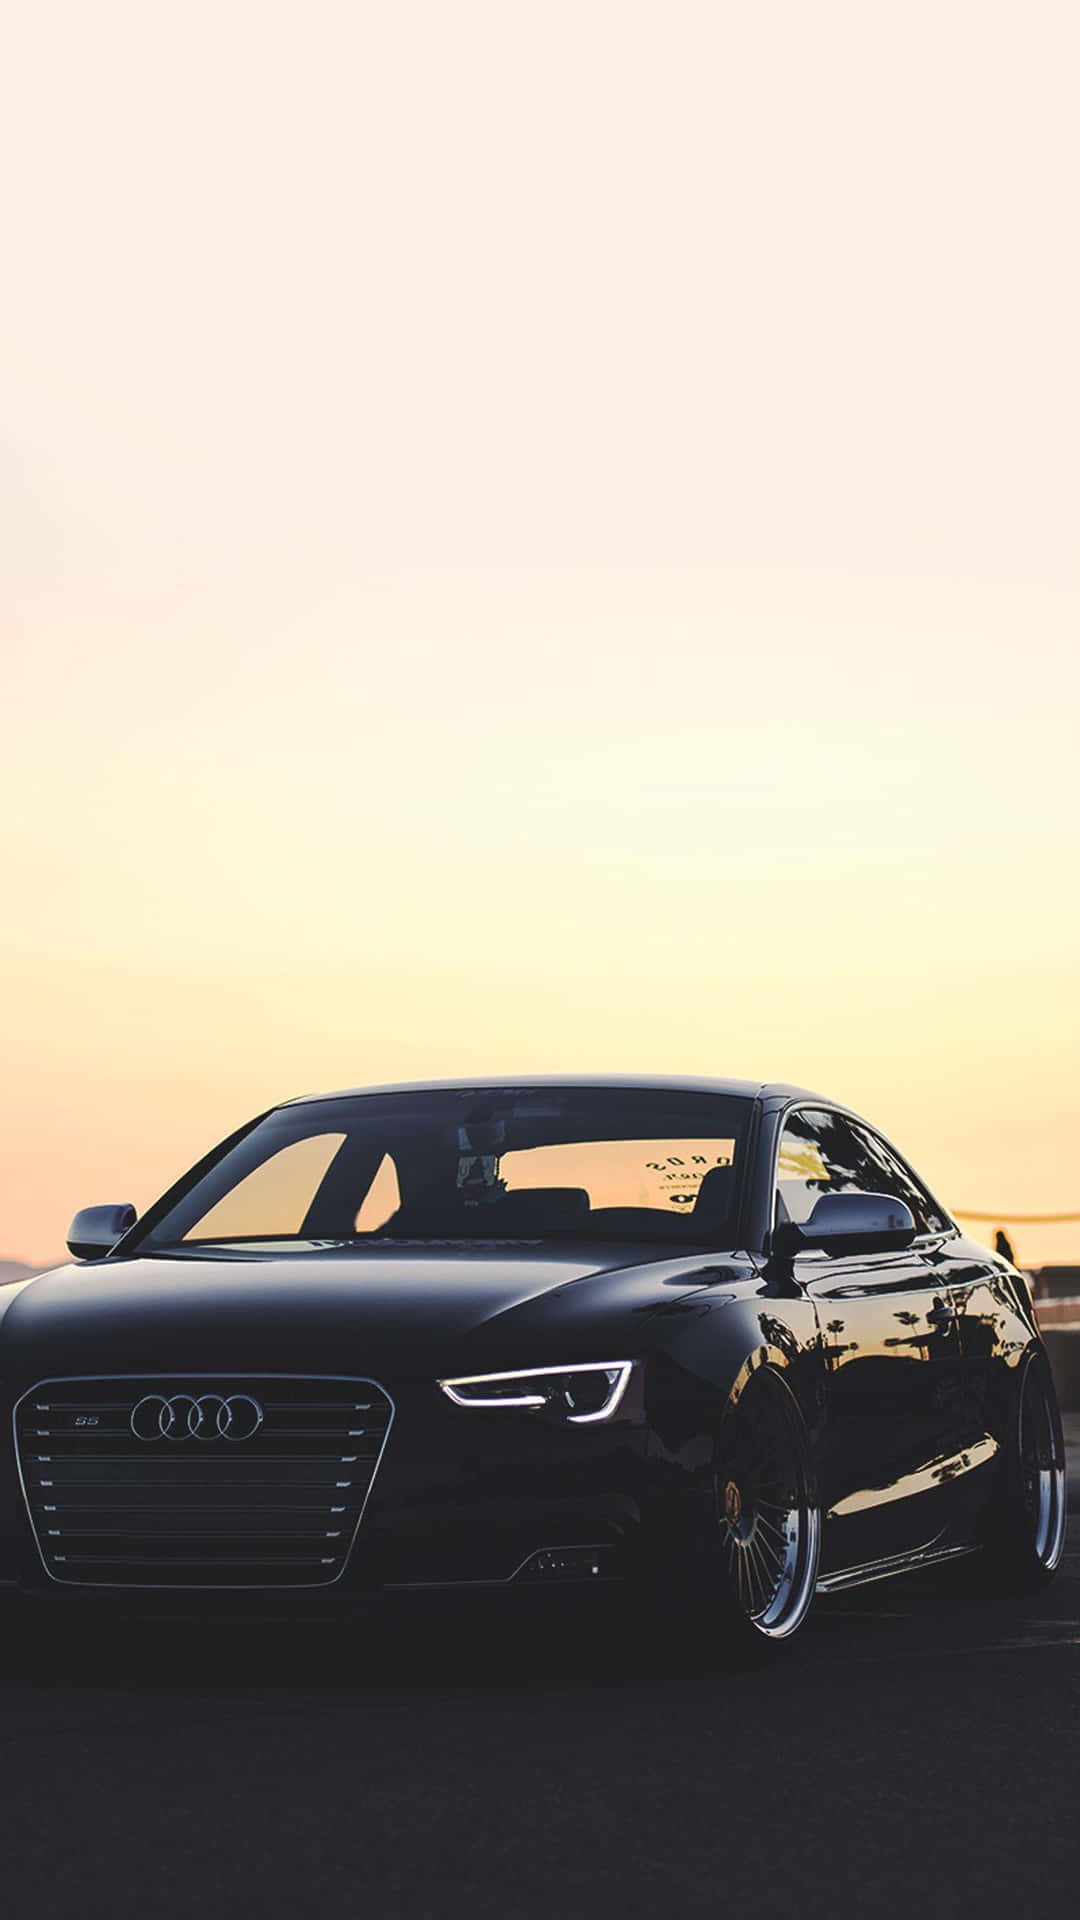 Black Audi Car Dusk Silhouette.jpg Wallpaper